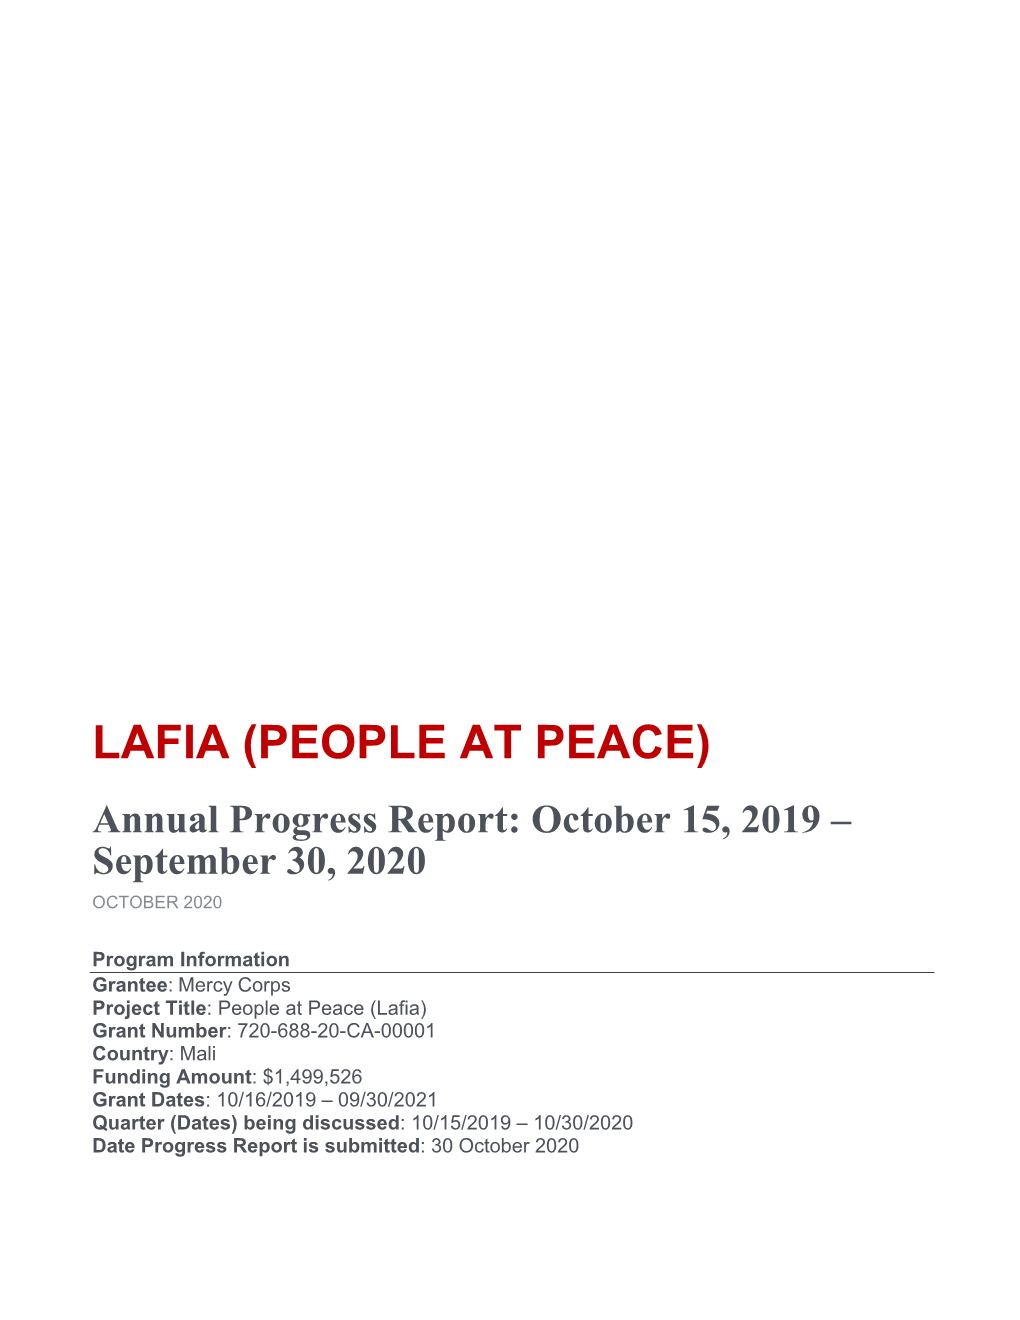 MC Mali Lafia FY20 Annual Report